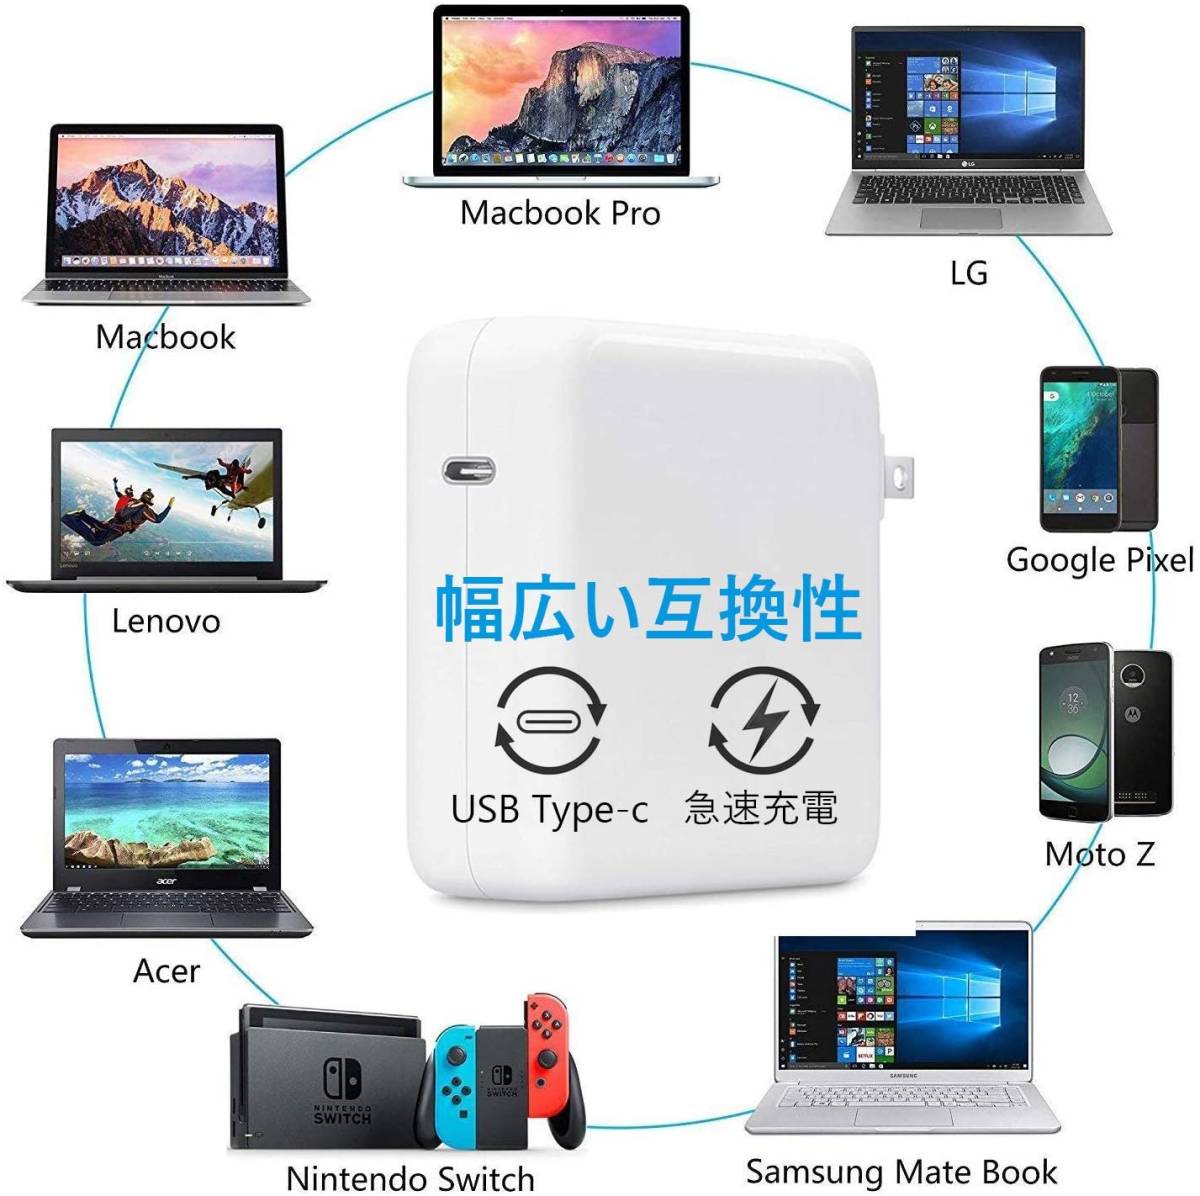 87W USB C 充電器 Macbook Pro Type-C アダプター PD タイプ-C 電源アダプタ Type C 急速充電器